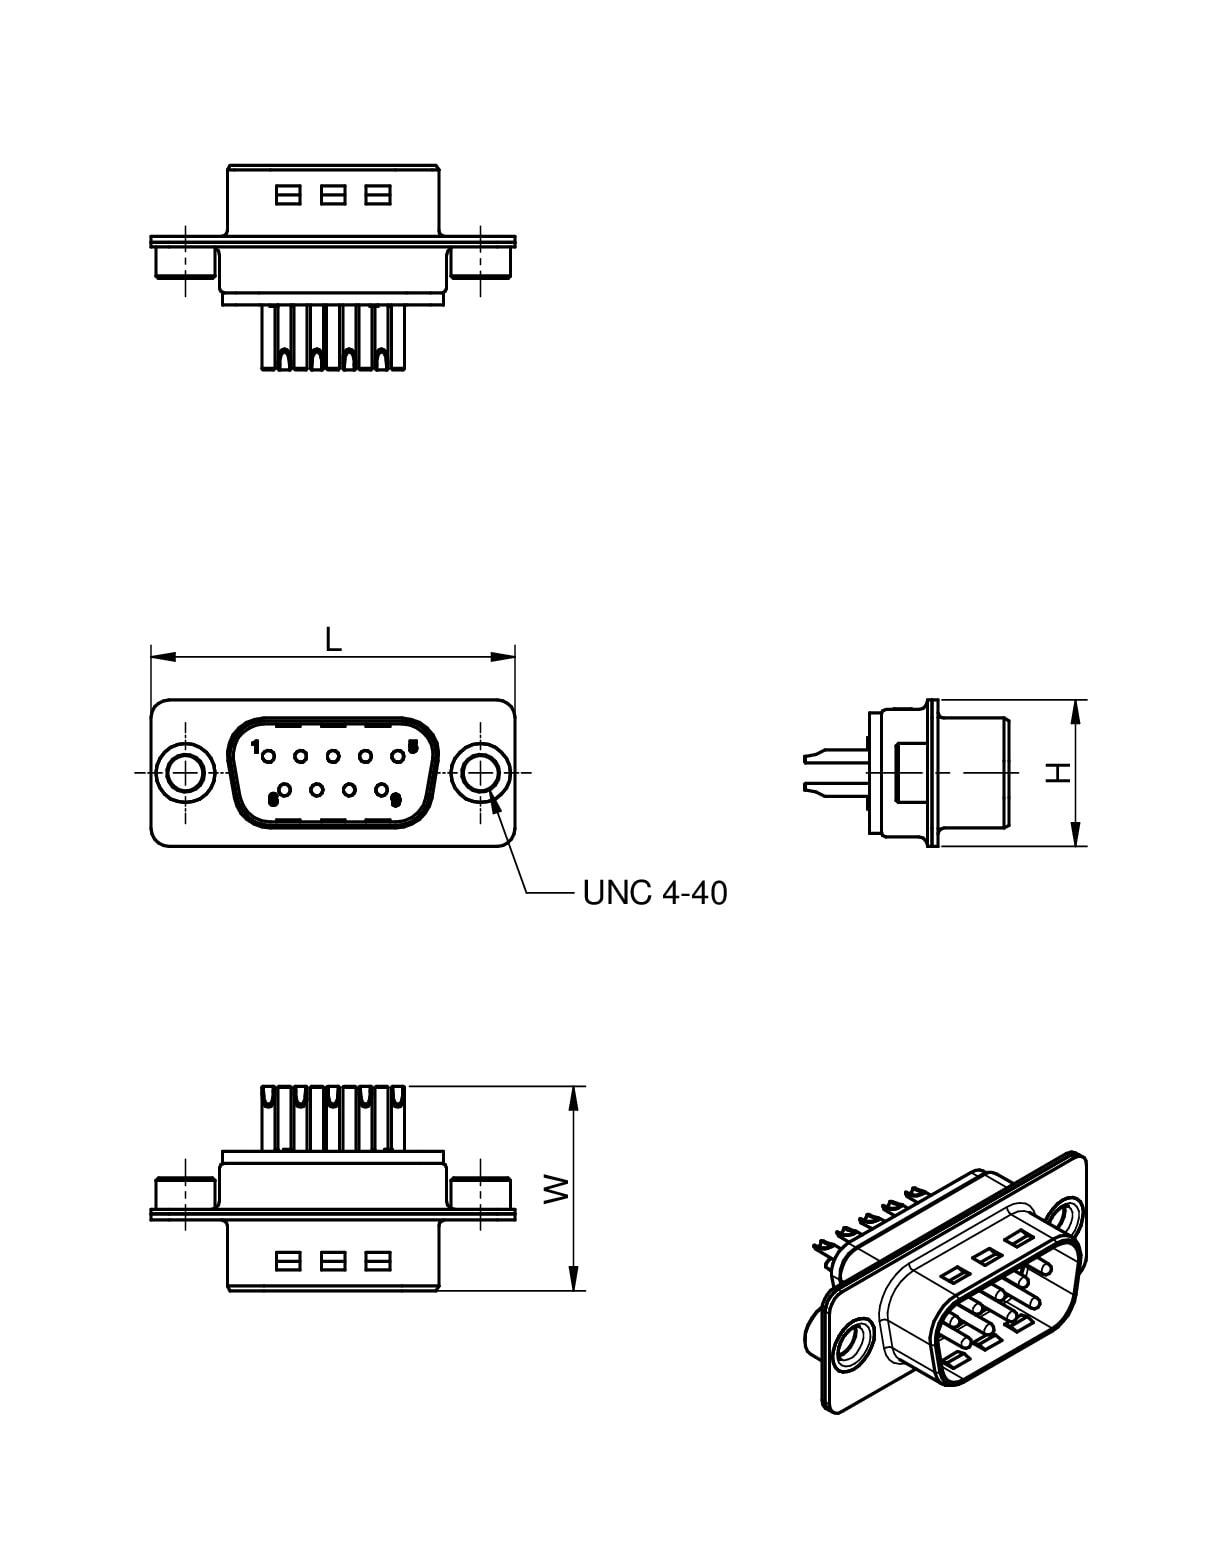 WE-D-SUB Filter Solder Cup | Passive Components | Würth Elektronik ...